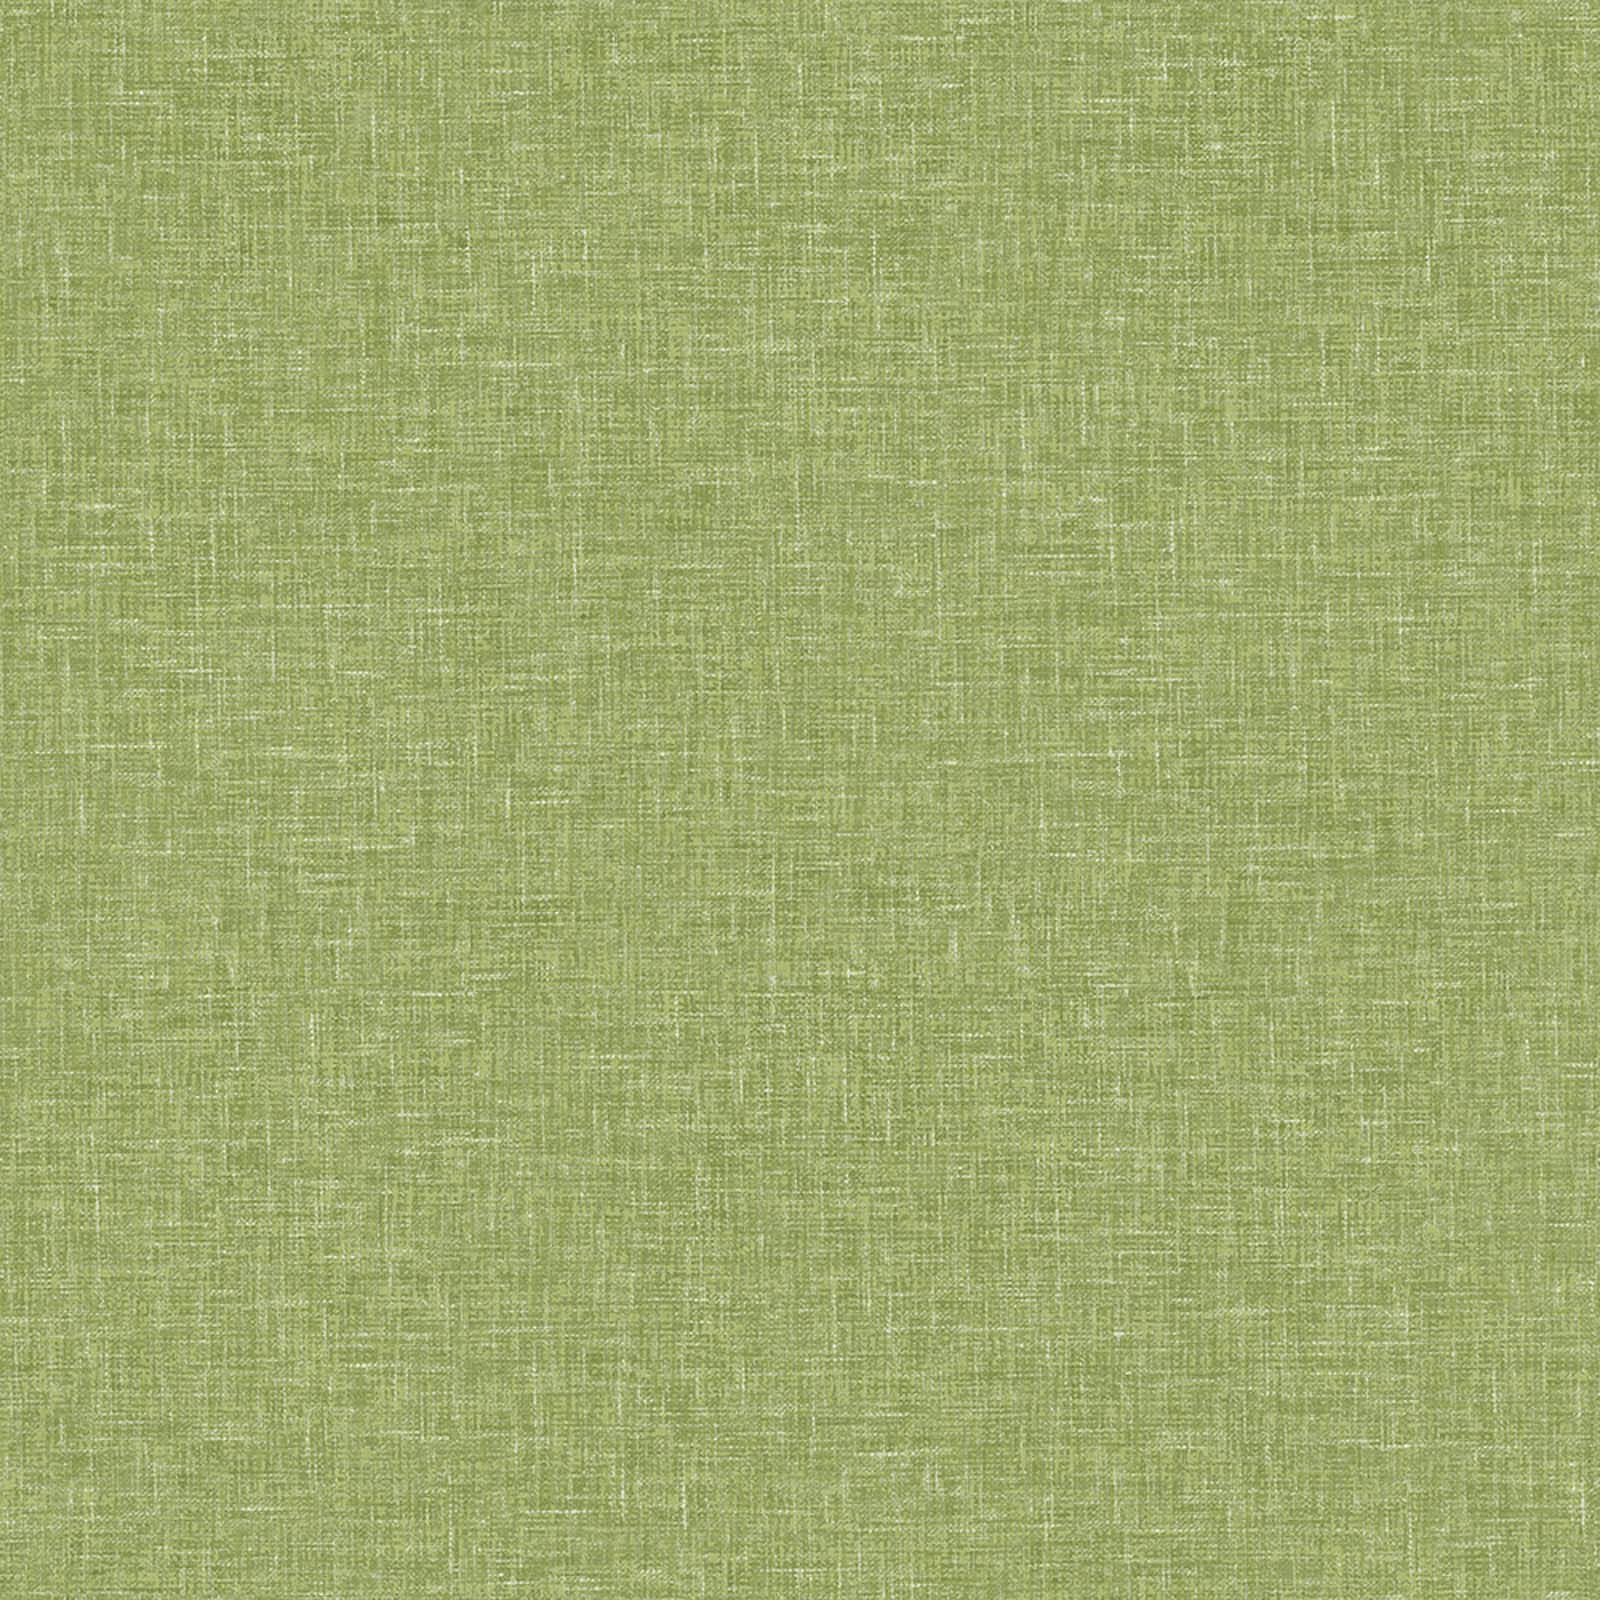 Arthouse Linen Texture Plain Textured Moss Green Wallpaper